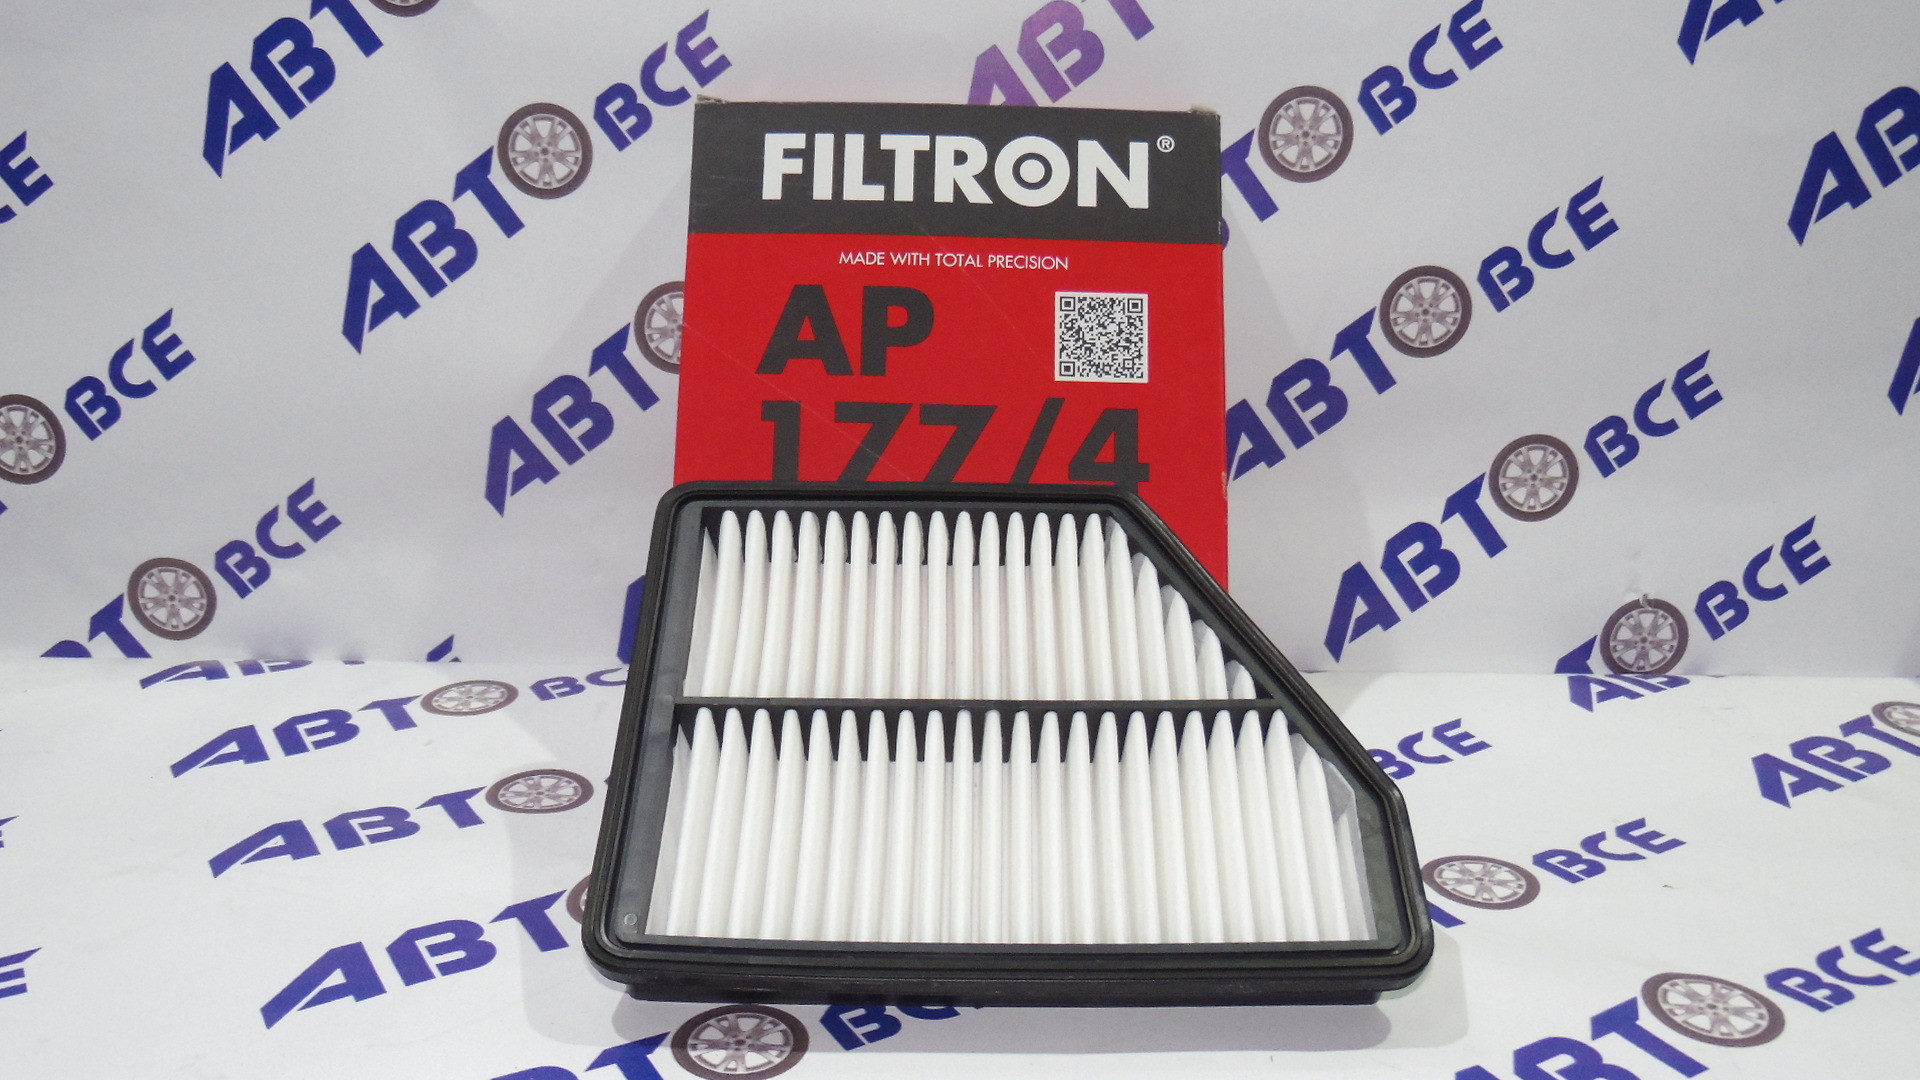 Фильтр воздушный AP1774 FILTRON